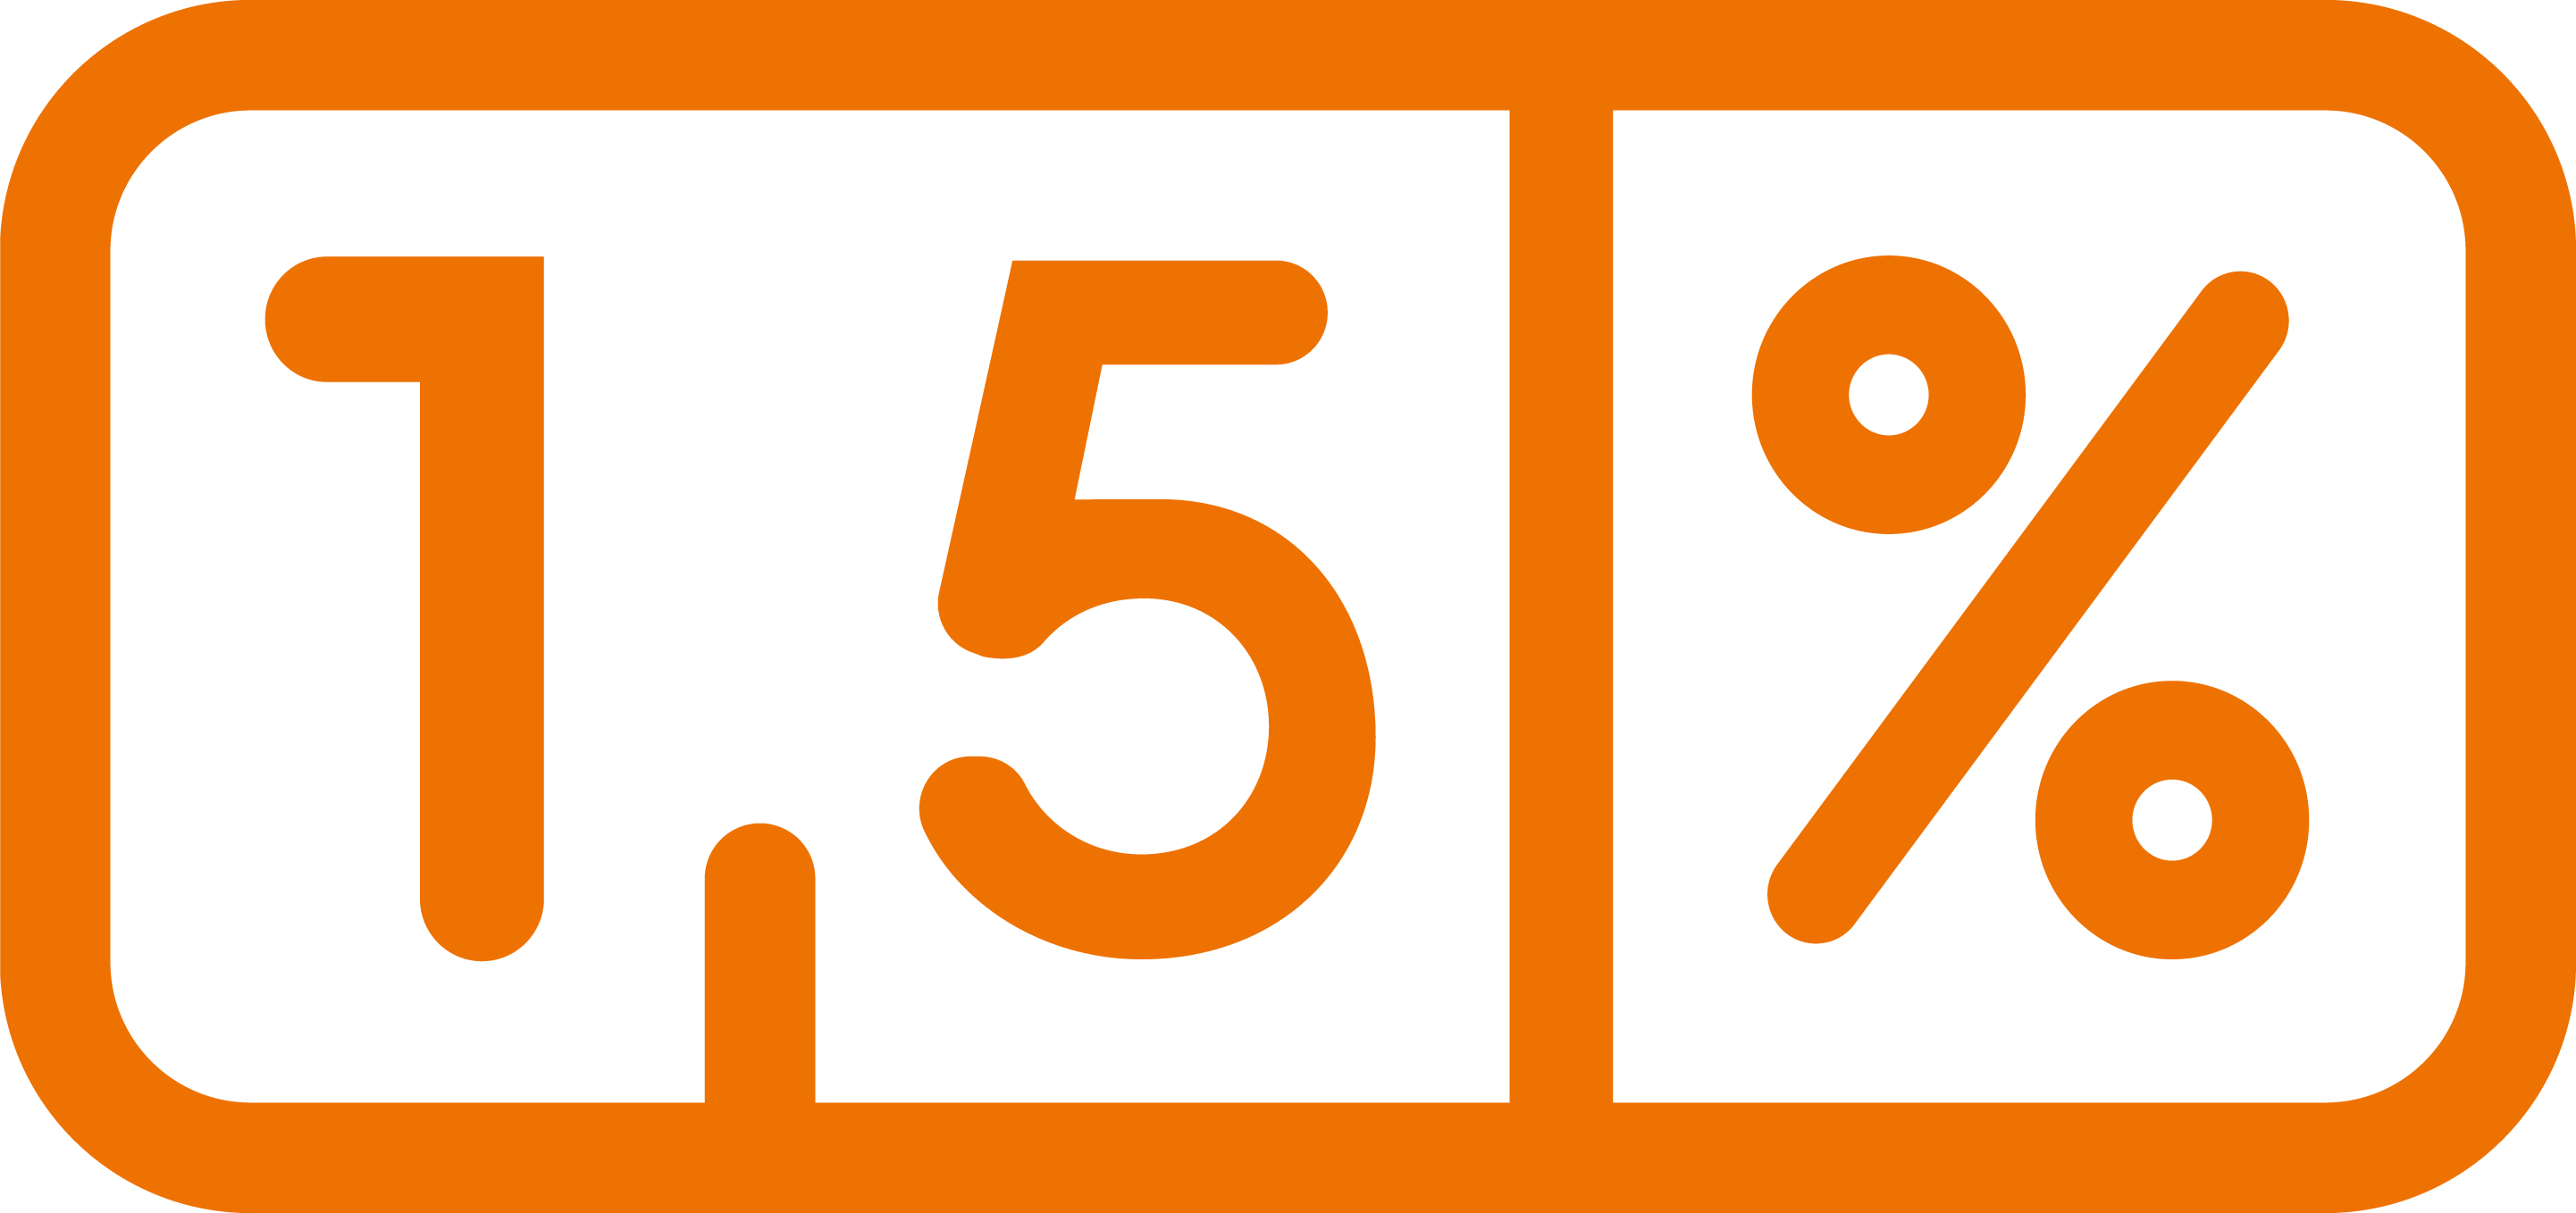 Barwna grafika w kształcie prostokąta leżącego. Na białym tle pomarańczową czcionką napis: „1,5 %”. Grafika otoczona pomarańczową ramką.